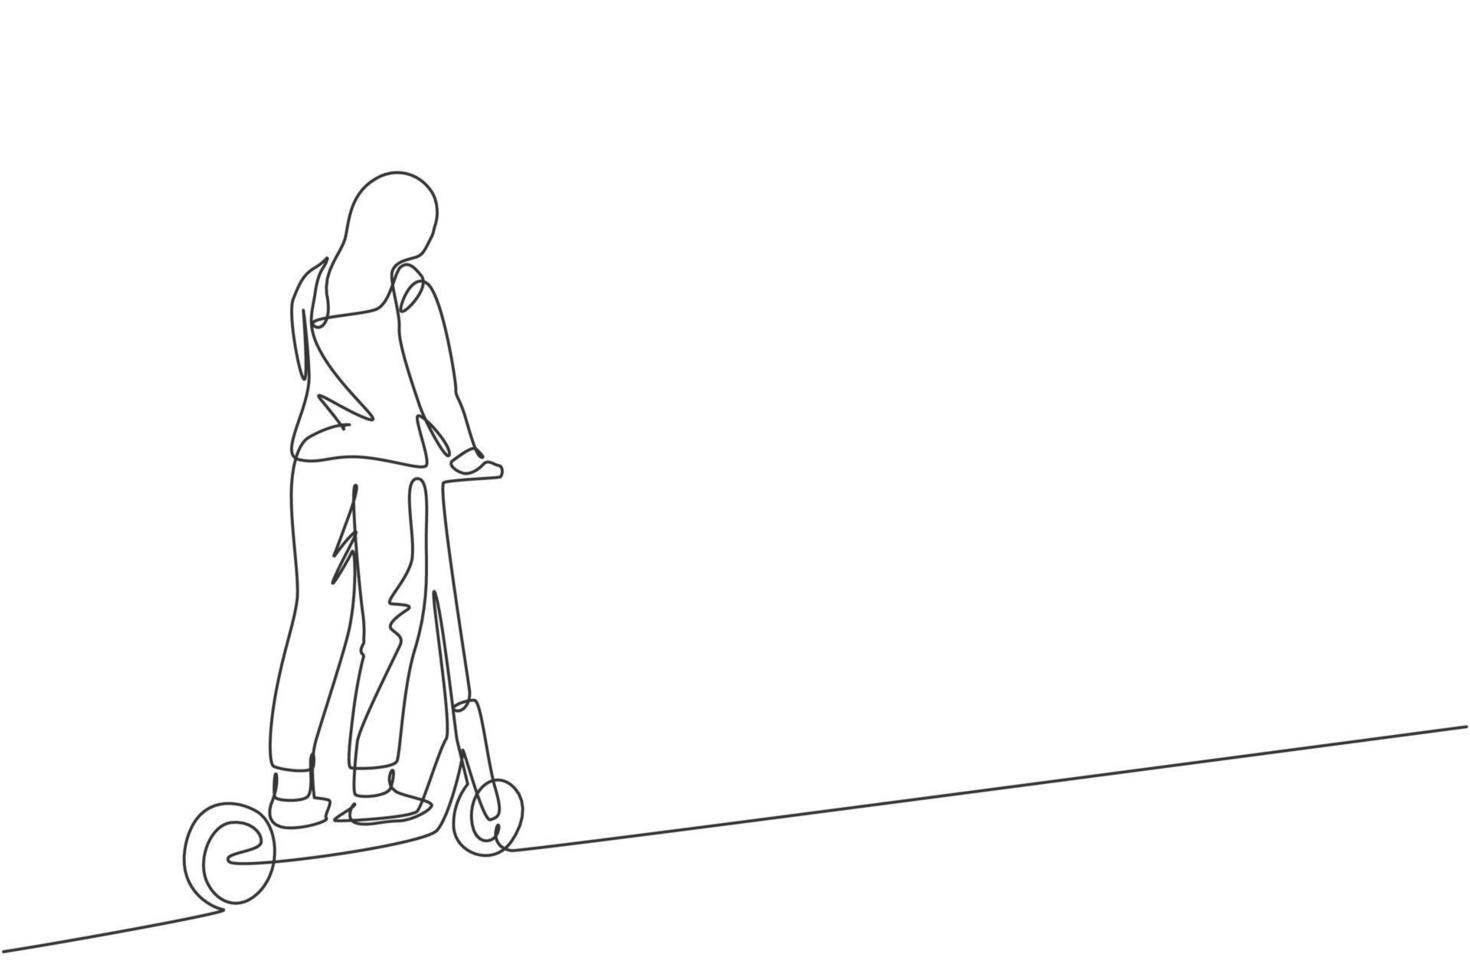 dessin au trait continu unique d'une jeune femme heureuse faisant du scooter électrique dans un espace public. transport respectueux de l'environnement. concept de mode de vie urbain. illustration vectorielle de conception de dessin à la mode une ligne vecteur